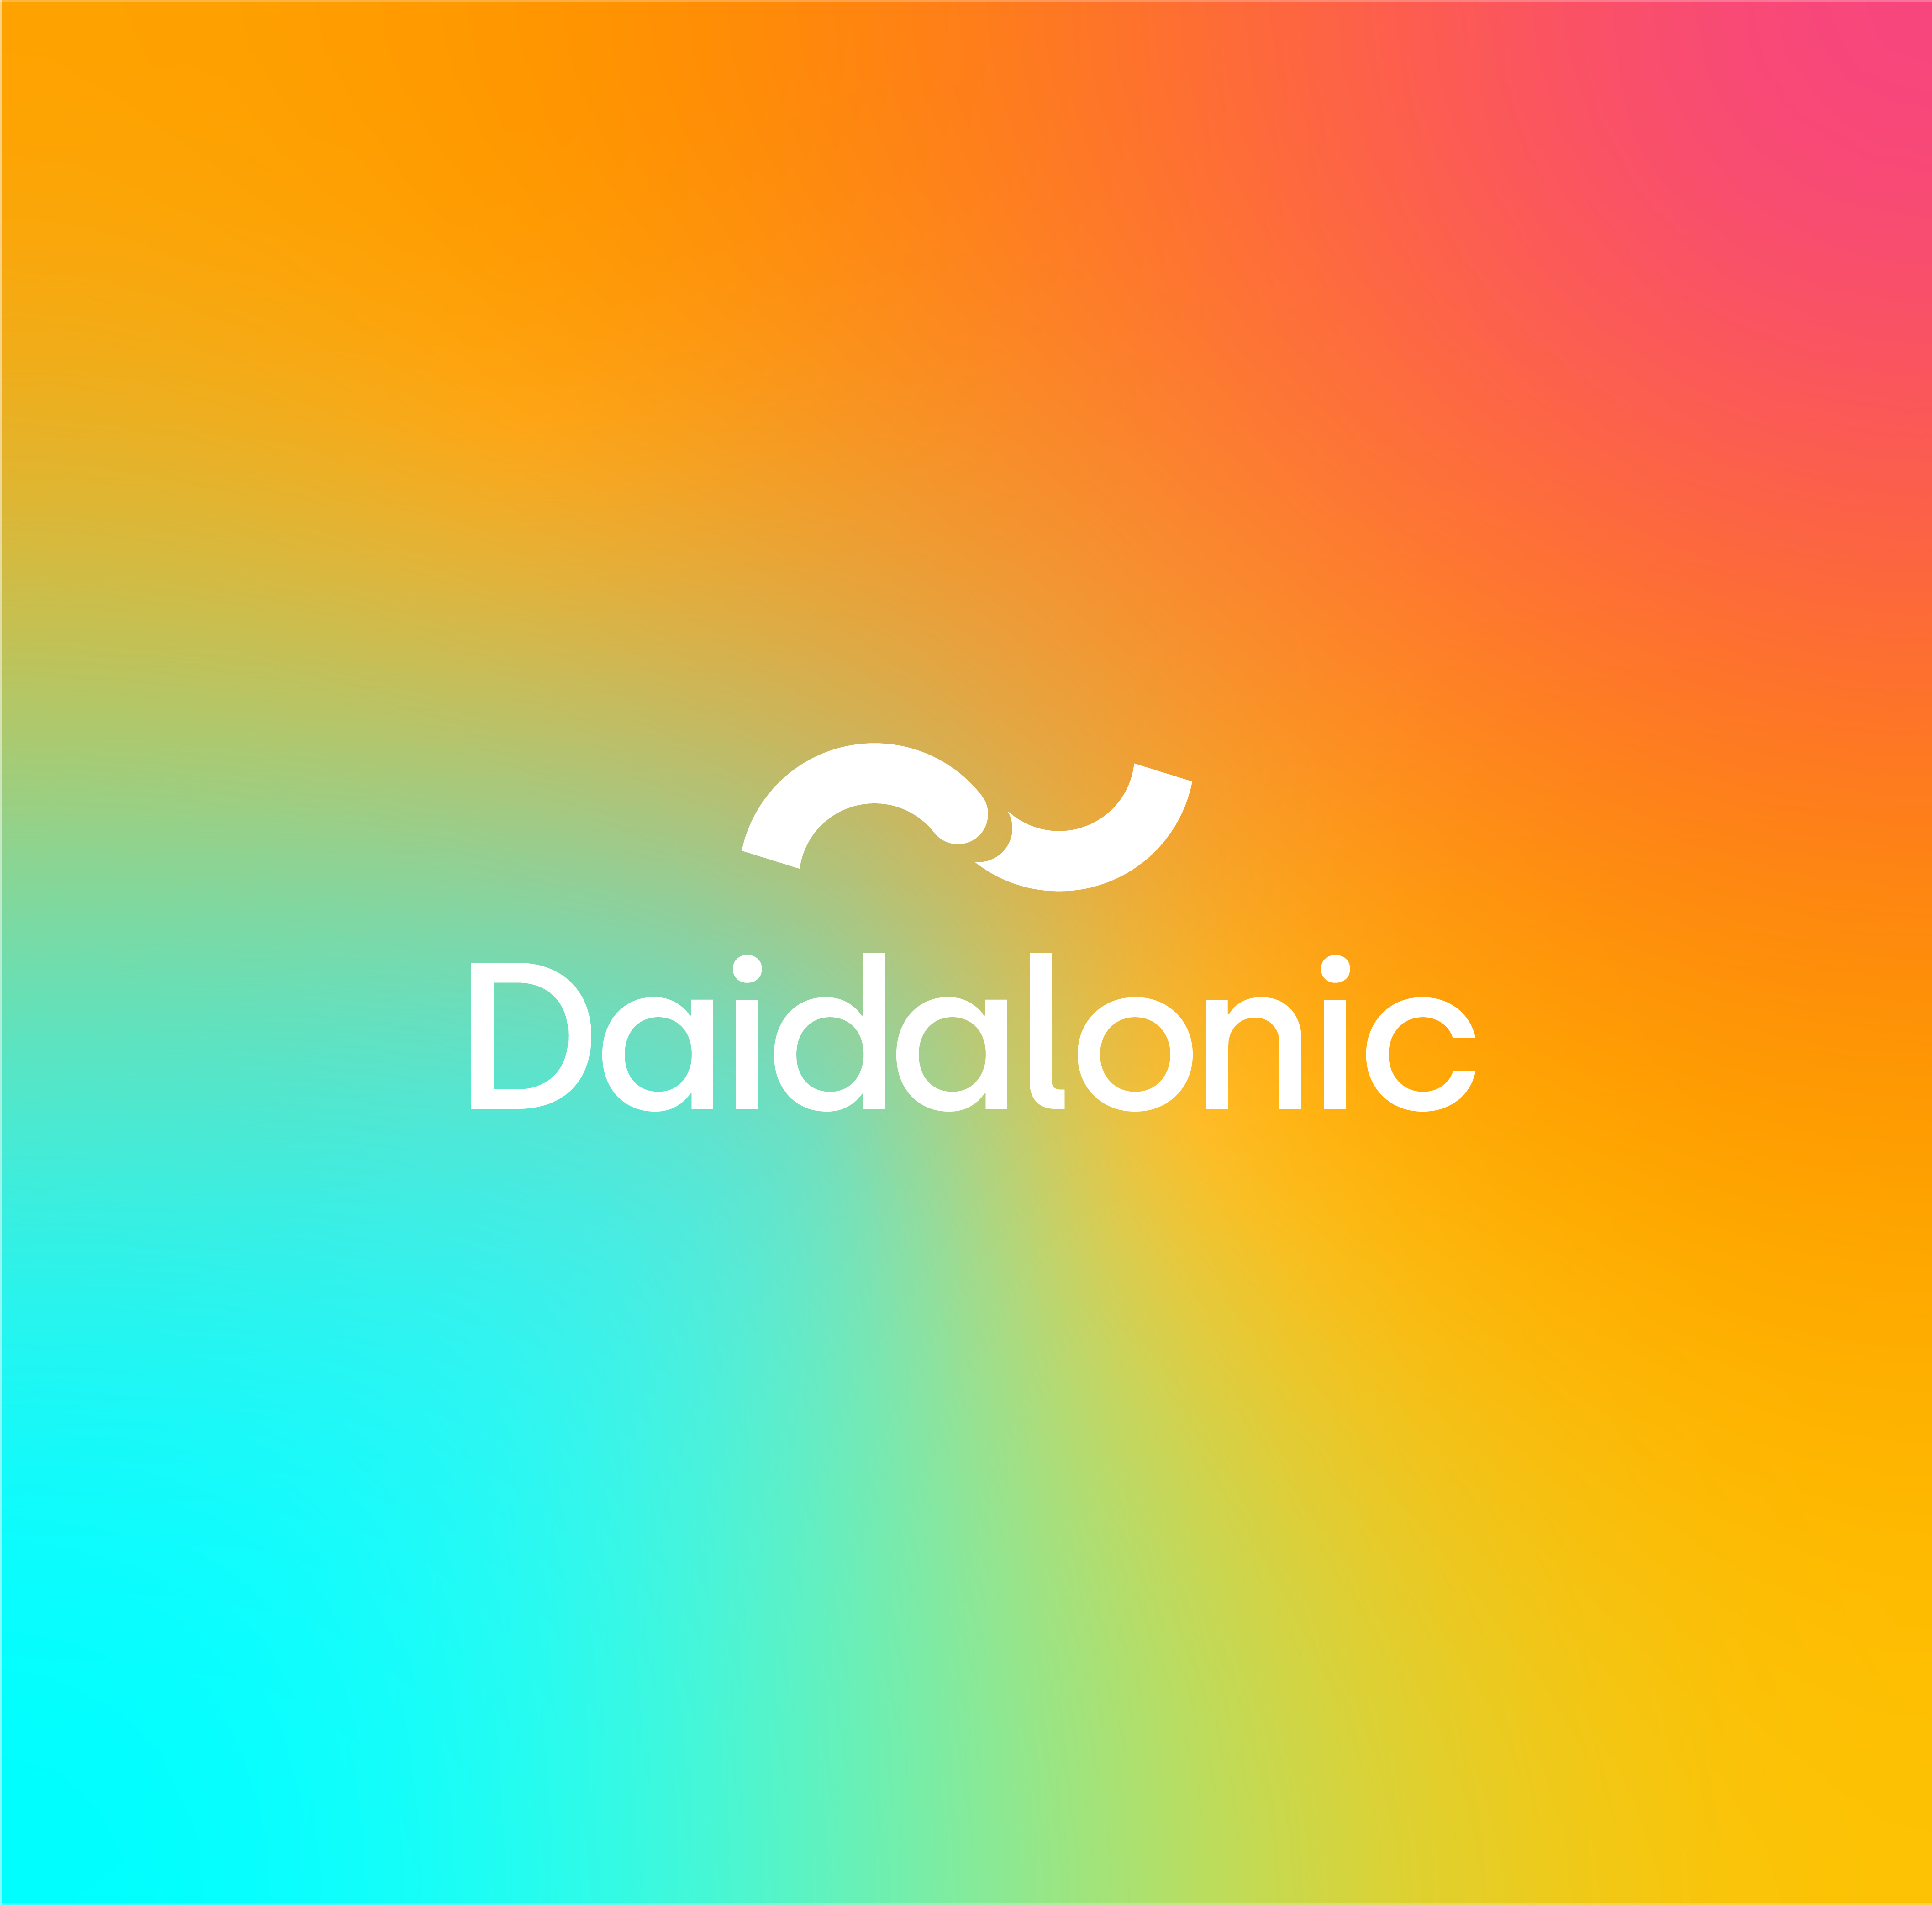 Daidalonic